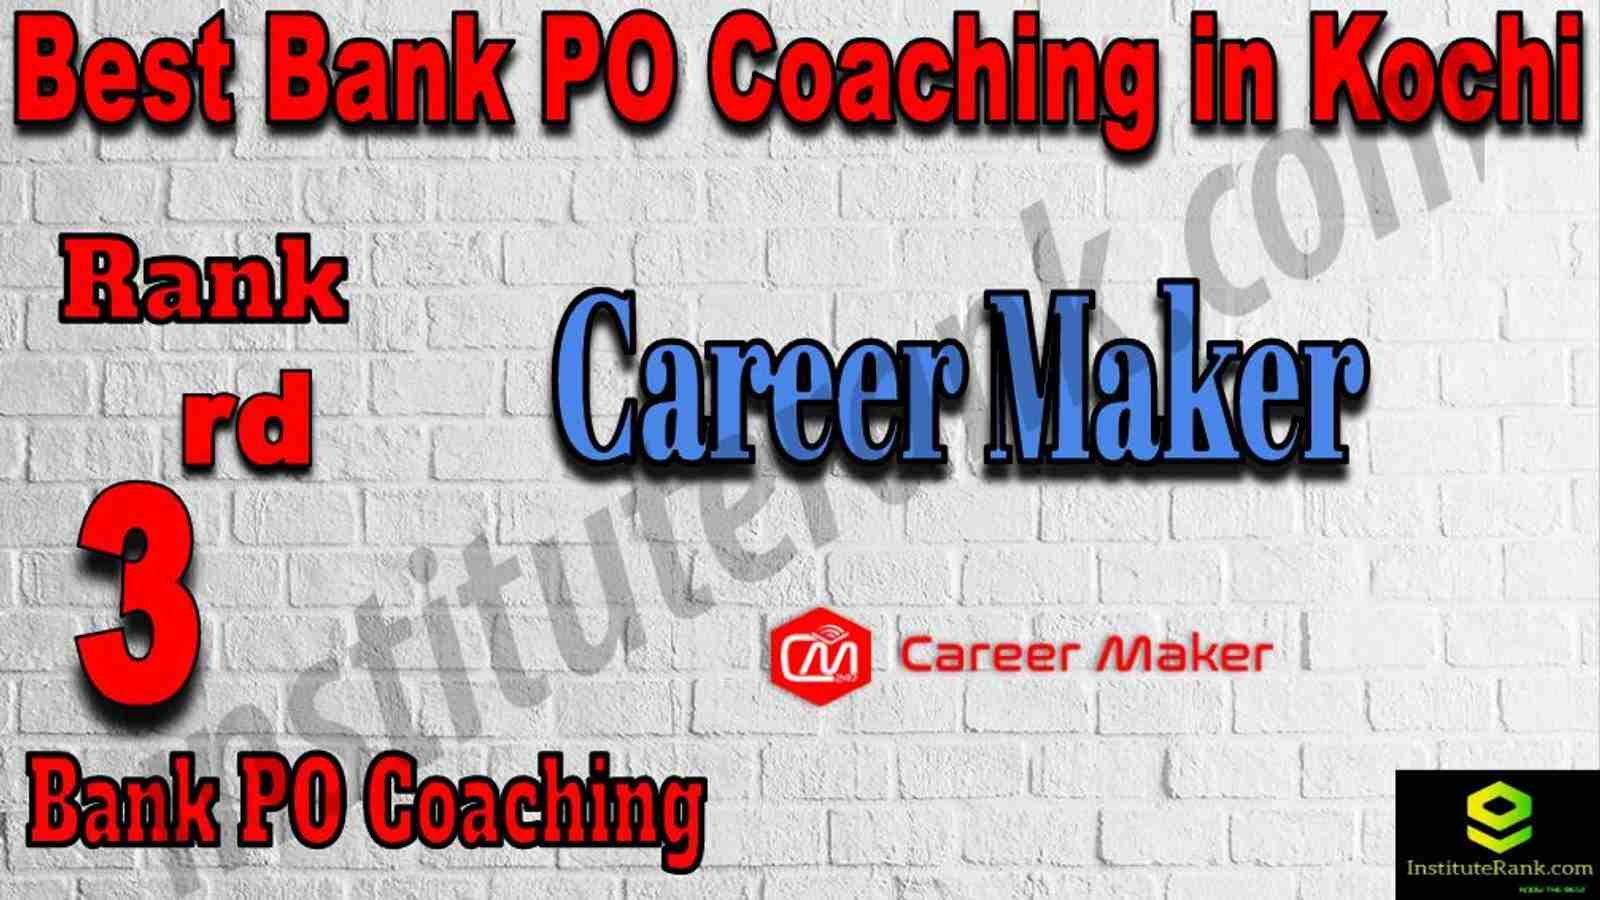 3rd Best Bank PO Coaching in Kochi